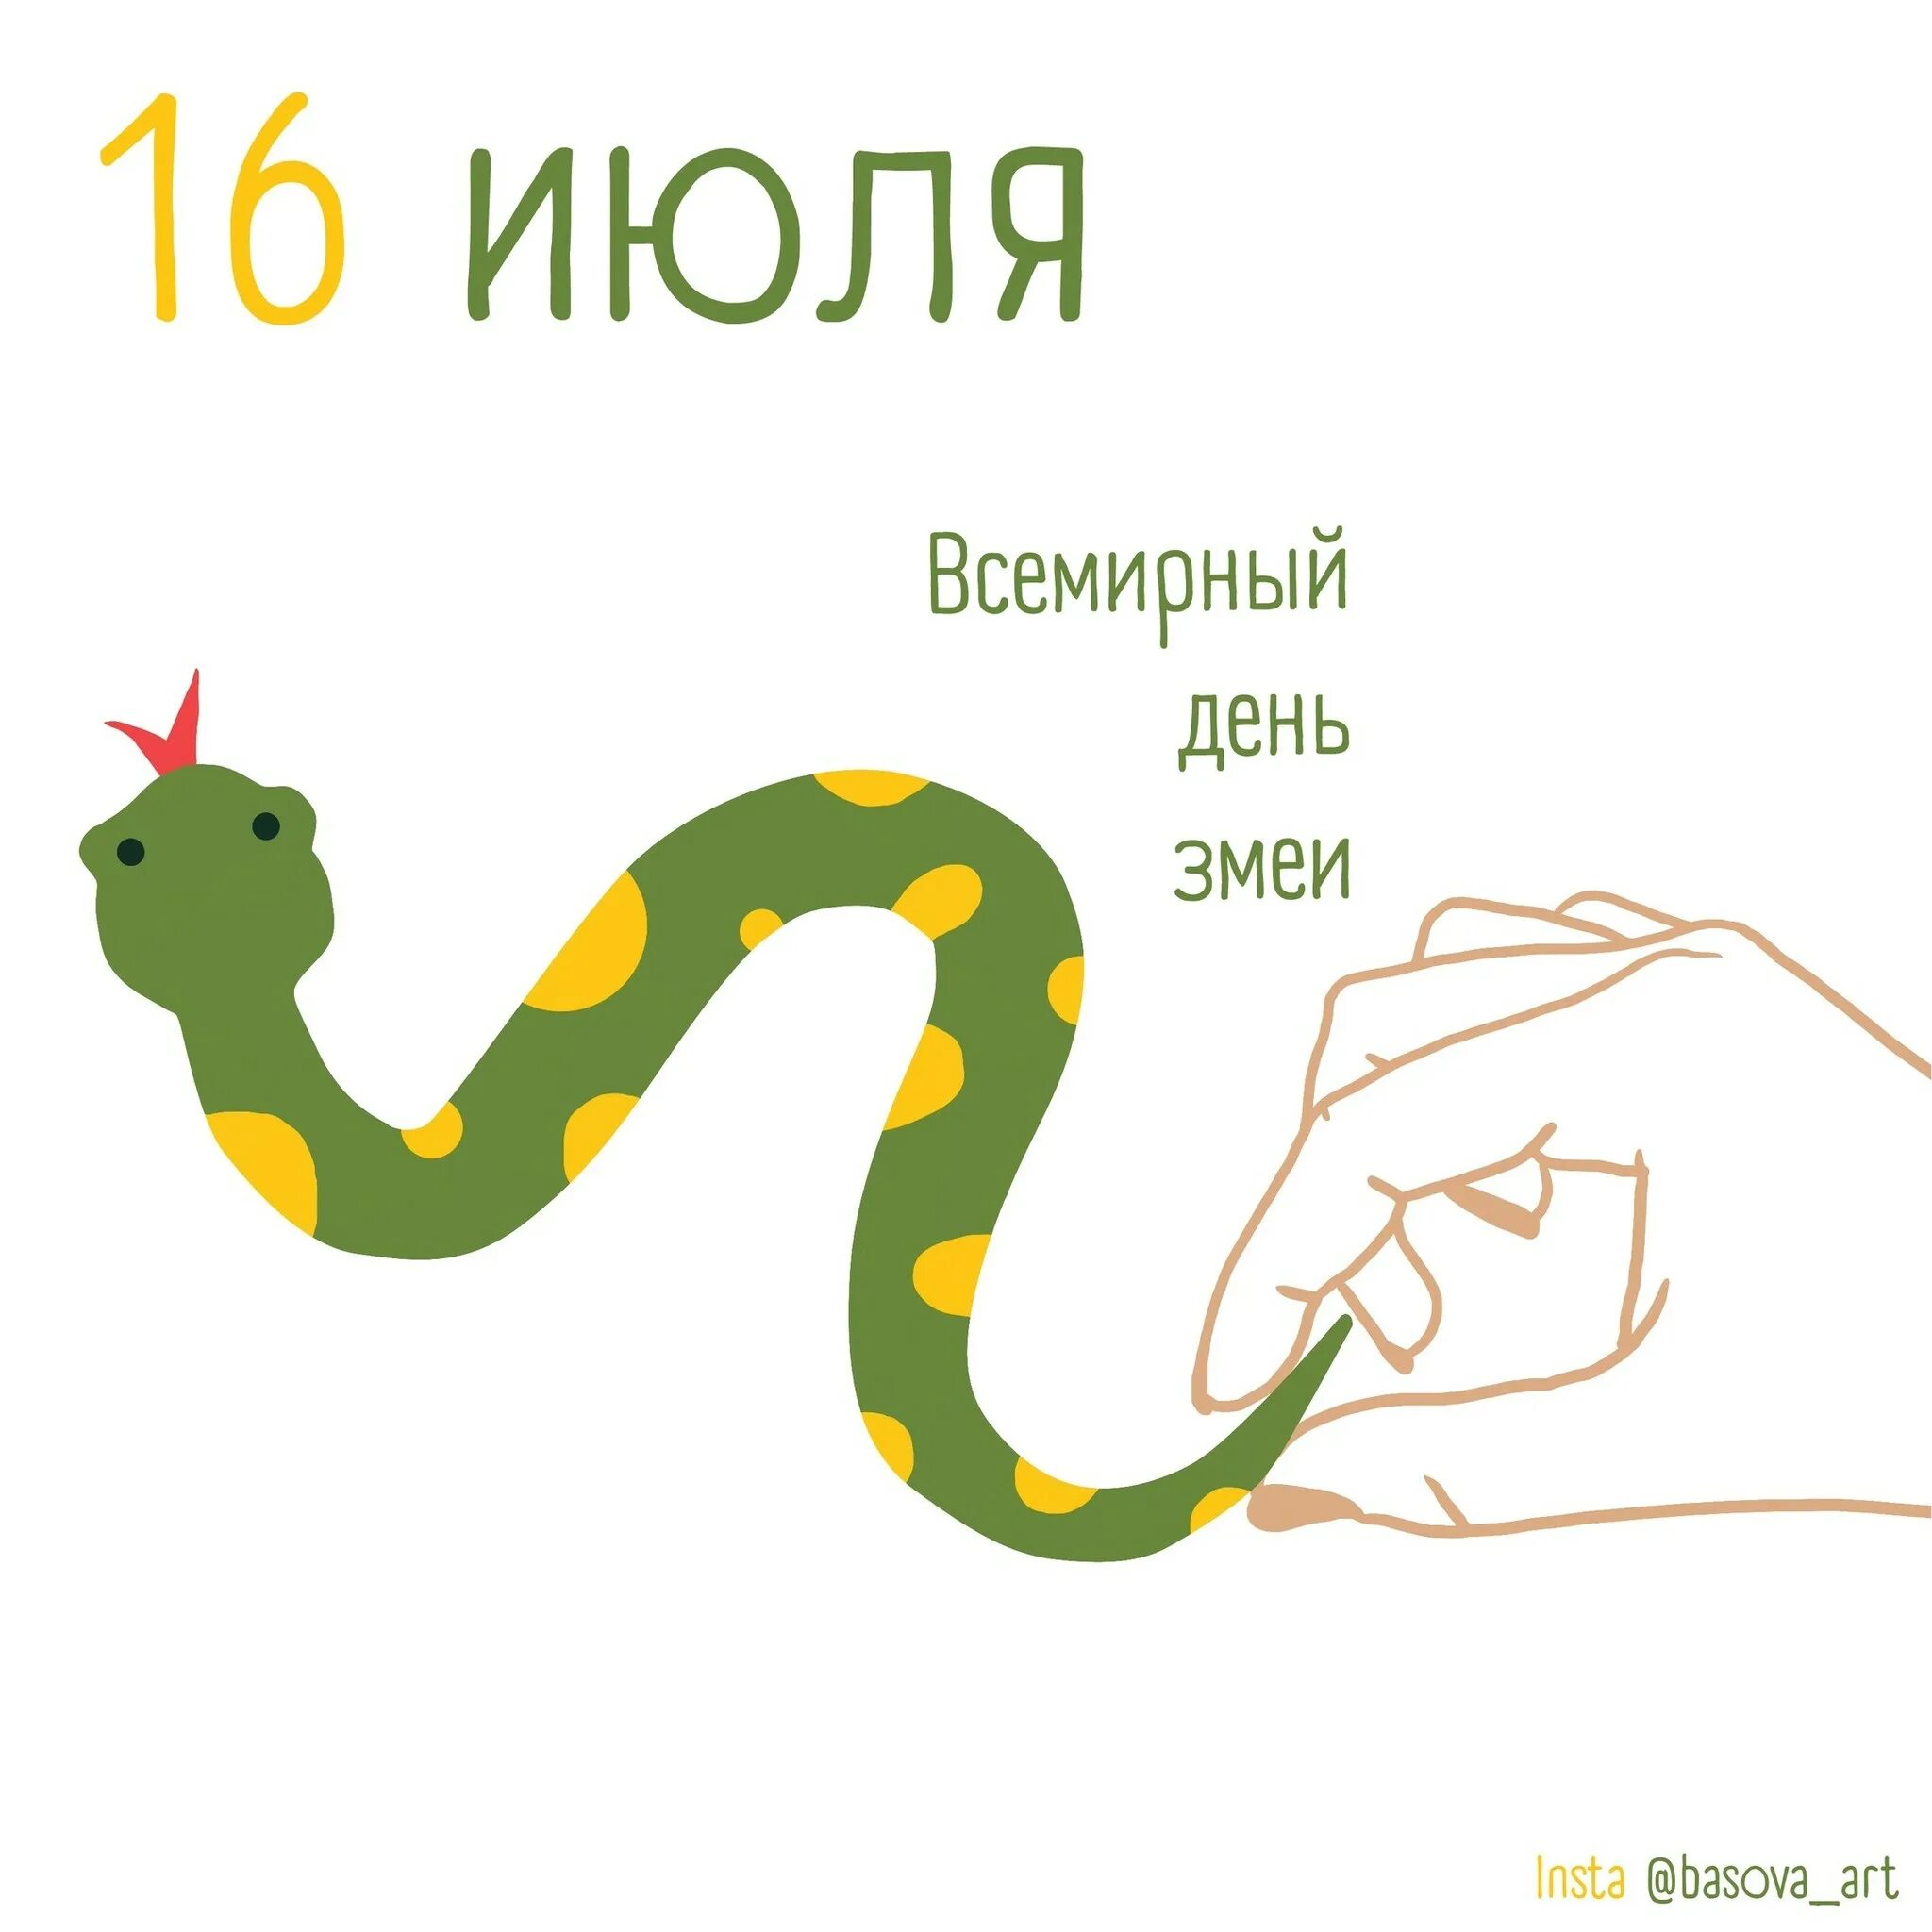 Какого года родились змеи. Всемирный день змеи (World Snake Day). Всемирный день змеи 16 июля. День змей 16 июля. С праздником змеи.